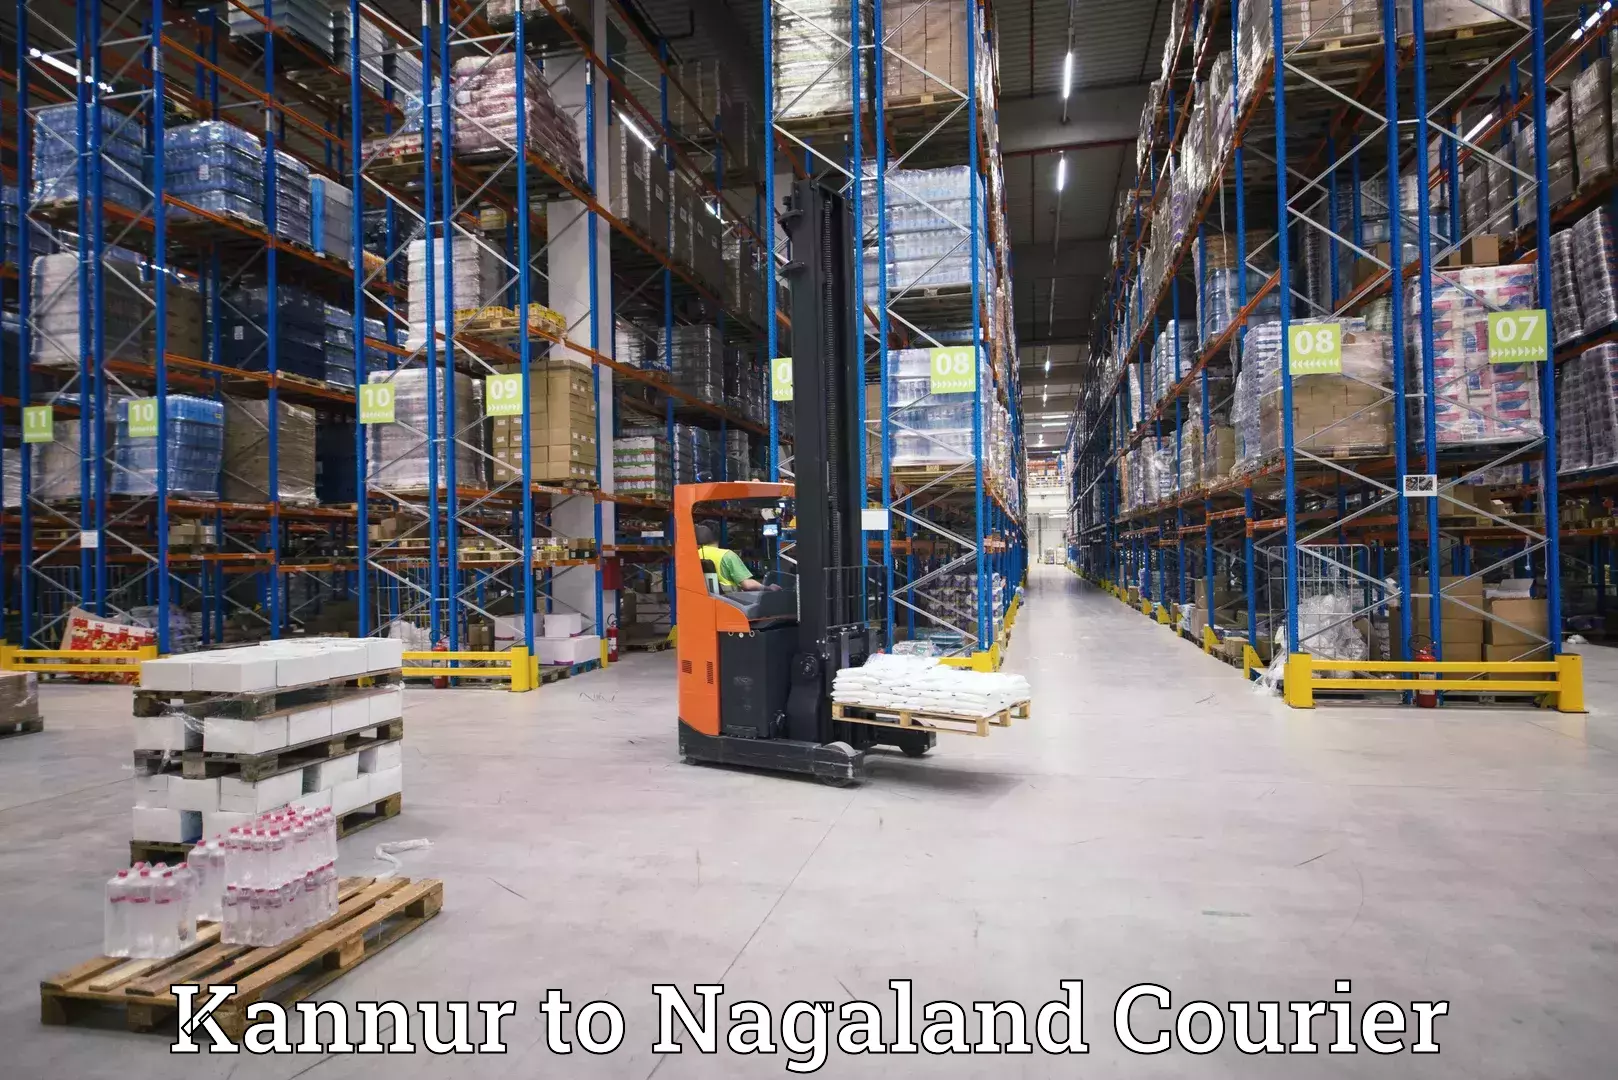 Courier service comparison Kannur to Dimapur